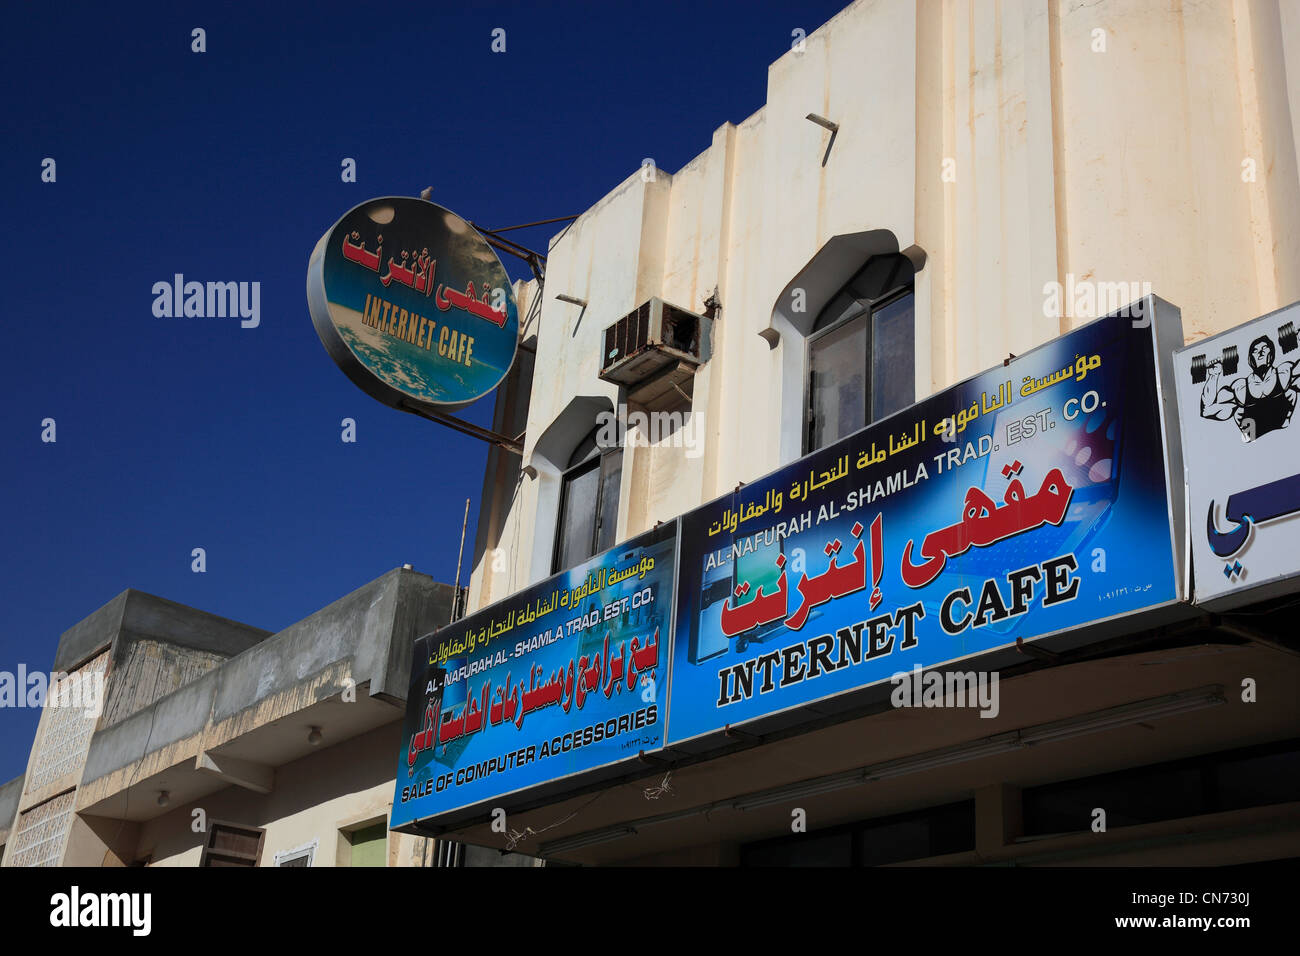 Innenstadt von Salalah, Oman, Werbeschild für Internet-Cafe Foto Stock